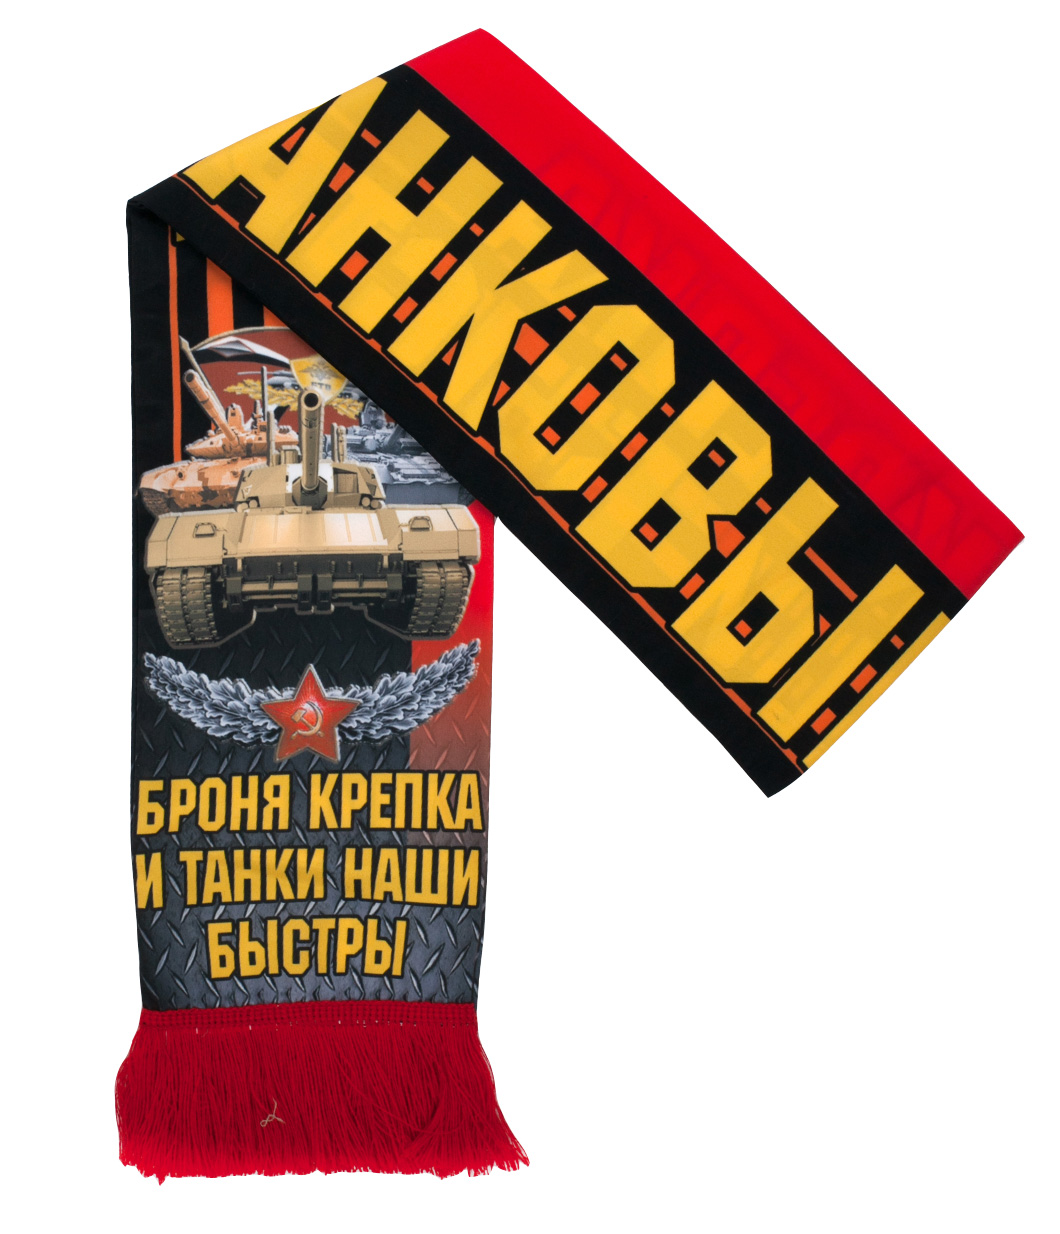 Шёлковый шарф в подарок танкисту 